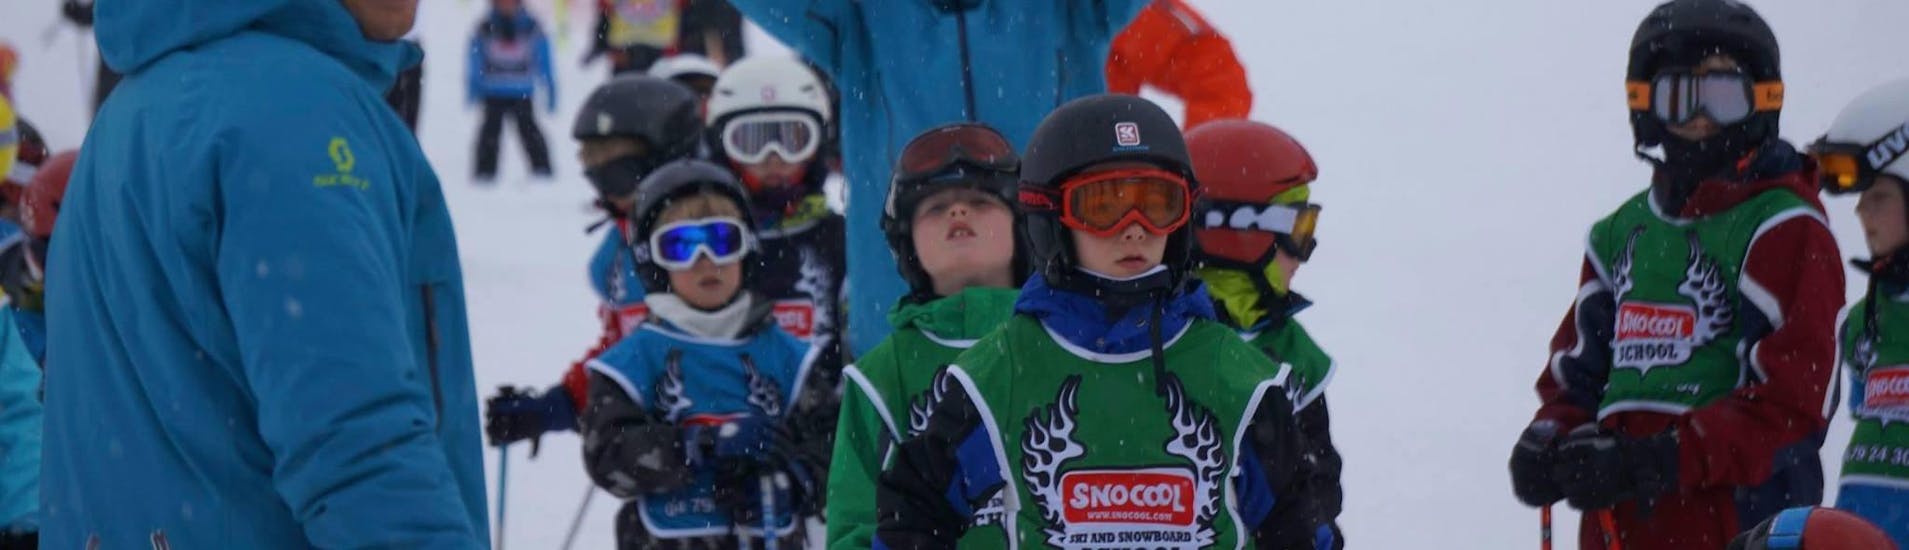 Skilessen voor Kinderen "Kidz 4" (vanaf 4 jaar).